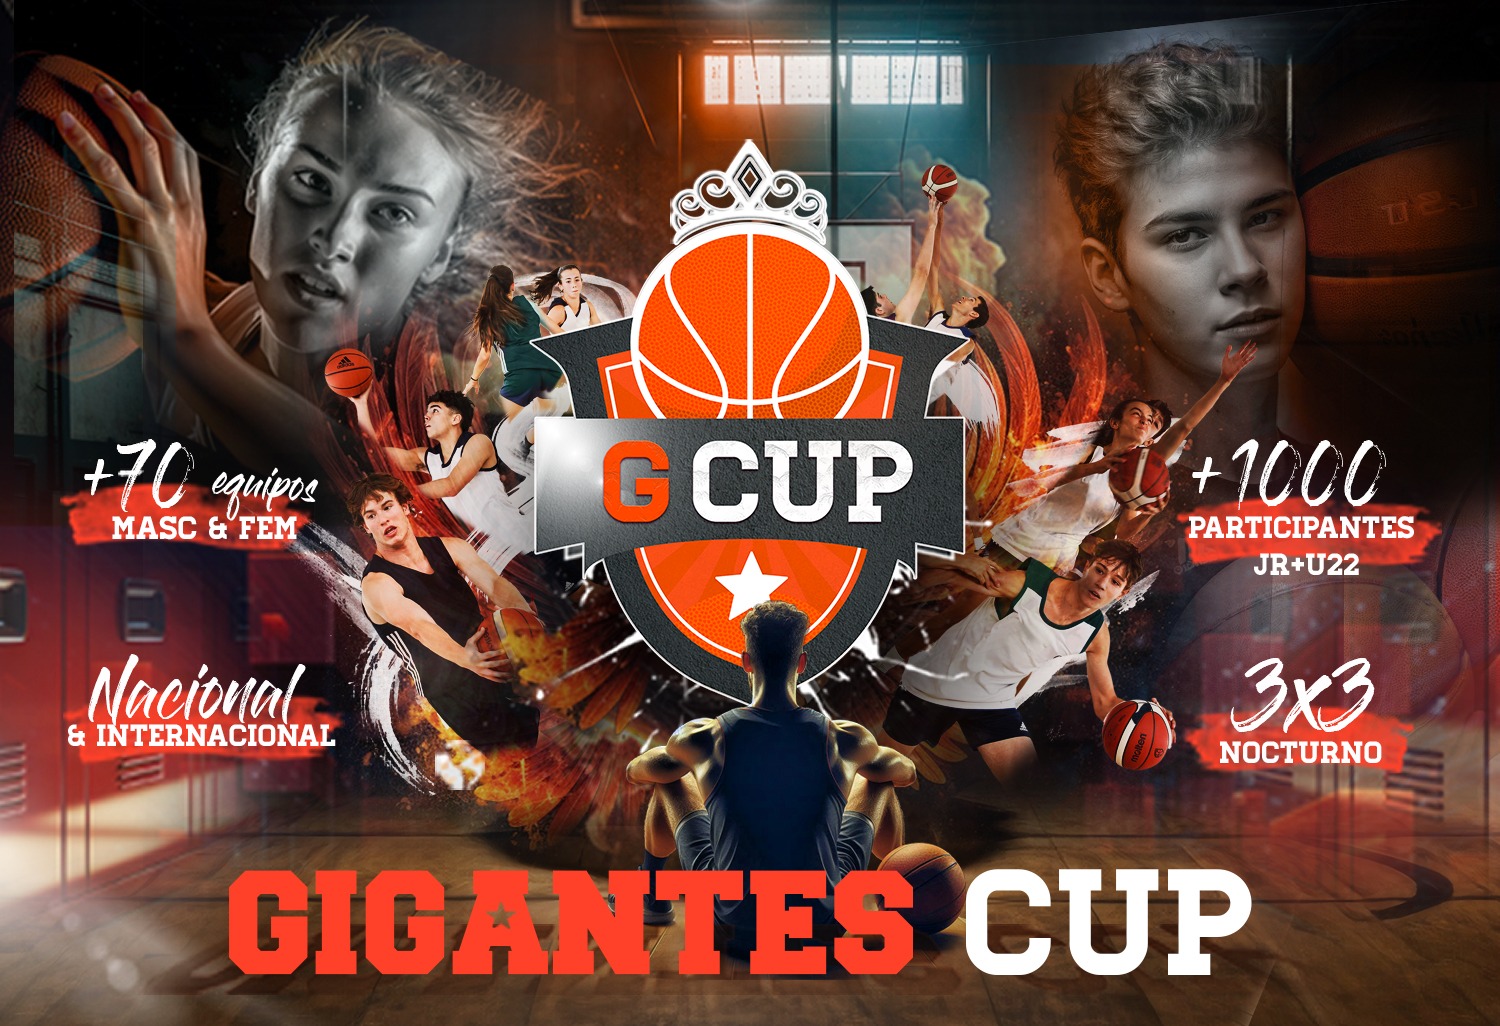 Llega la Gigantes Cup: nace un nuevo torneo internacional para impulsar el baloncesto juvenil